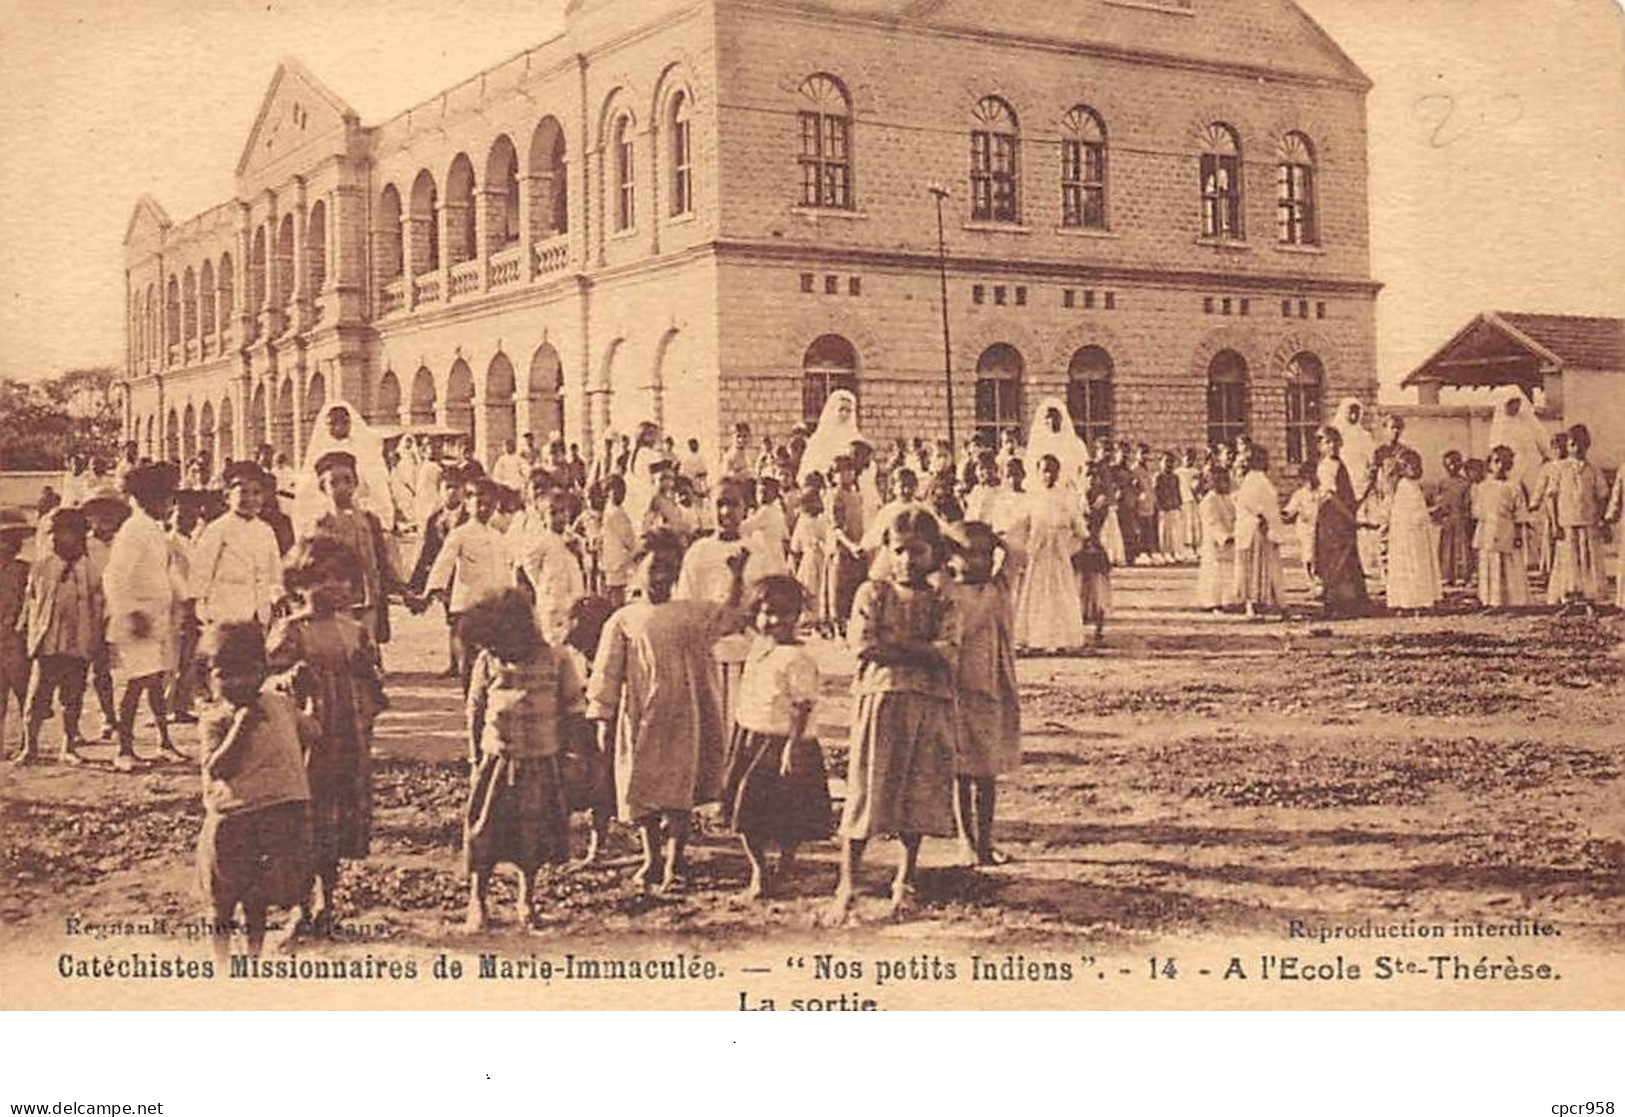 Inde - N°67627 - Catéchistes Missionnaires De Marie-Immaculée - Nos Petits Indiens - A L'école Ste-Thérèse - La Sortie - India